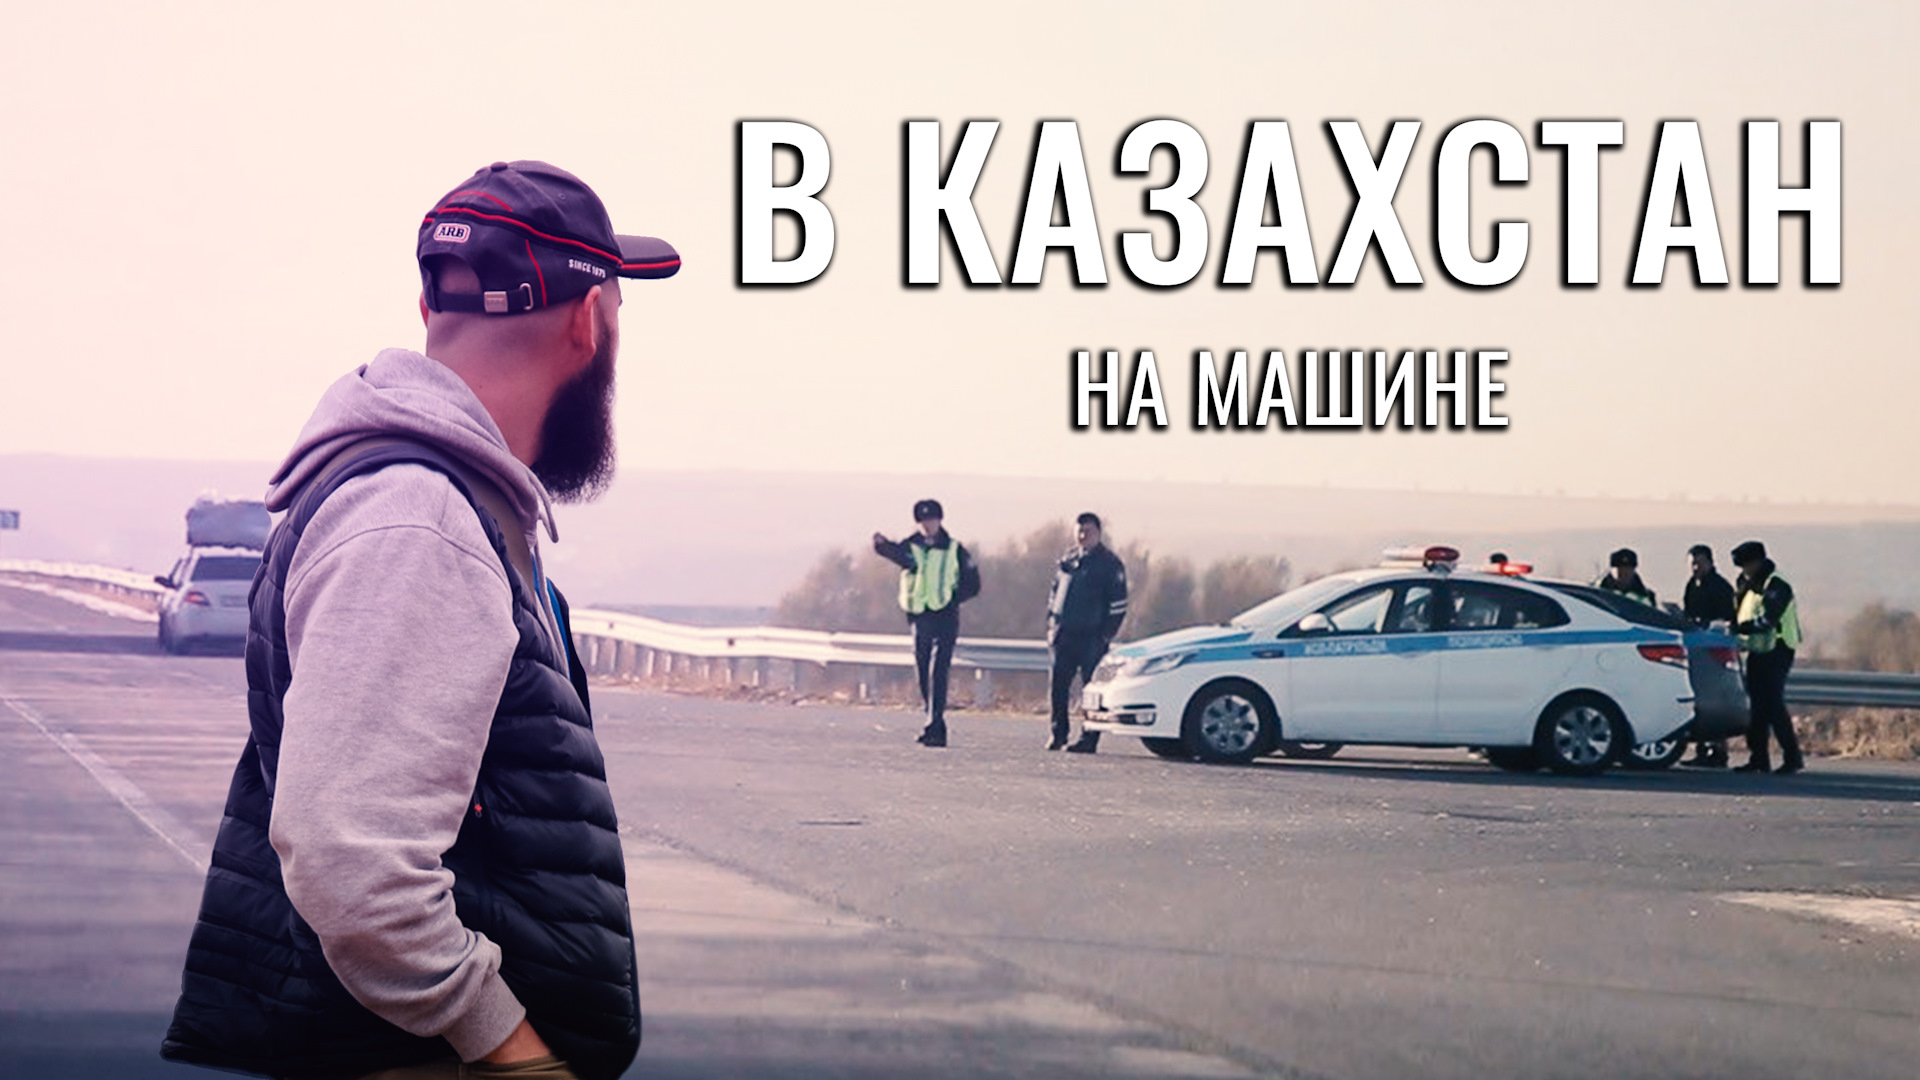 Уезжать ли в казахстан. Поездка в Казахстан на машине. Поехали в Казахстан. Едем в Казахстан на своей машина. В отпуск в Казахстан на машине.